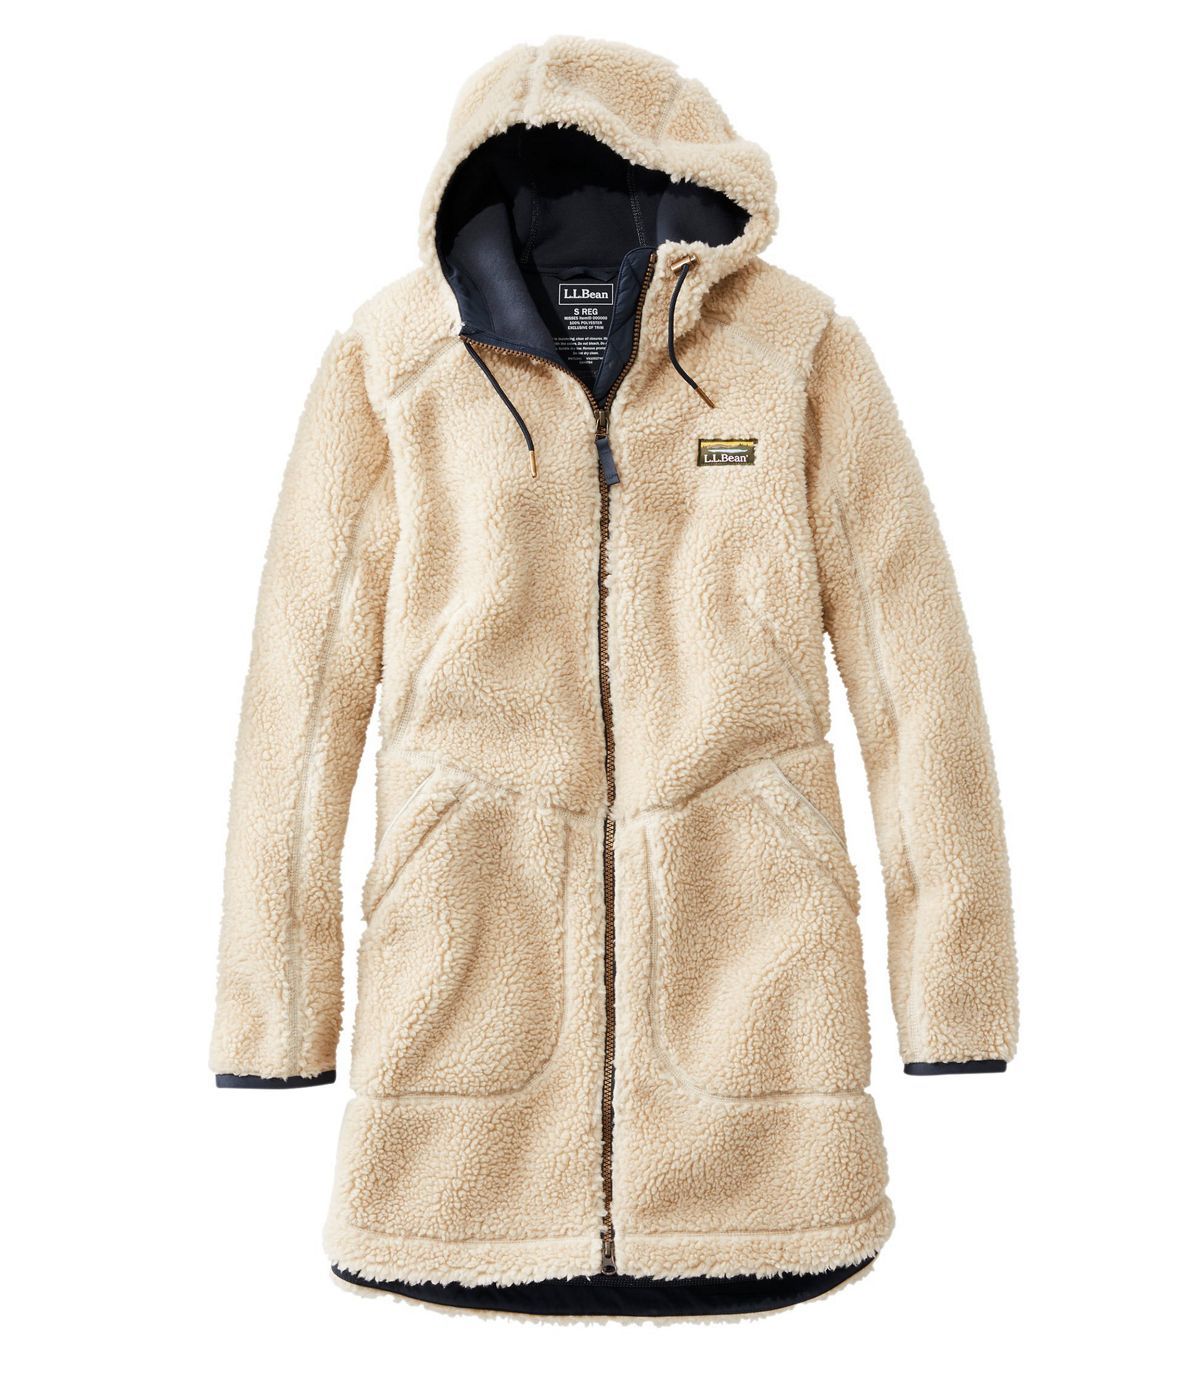 XQS Women Winter Warm Down Jacket Slim Fit Zip up Coat Fur Faux Hood Parka Overcoat Outwear